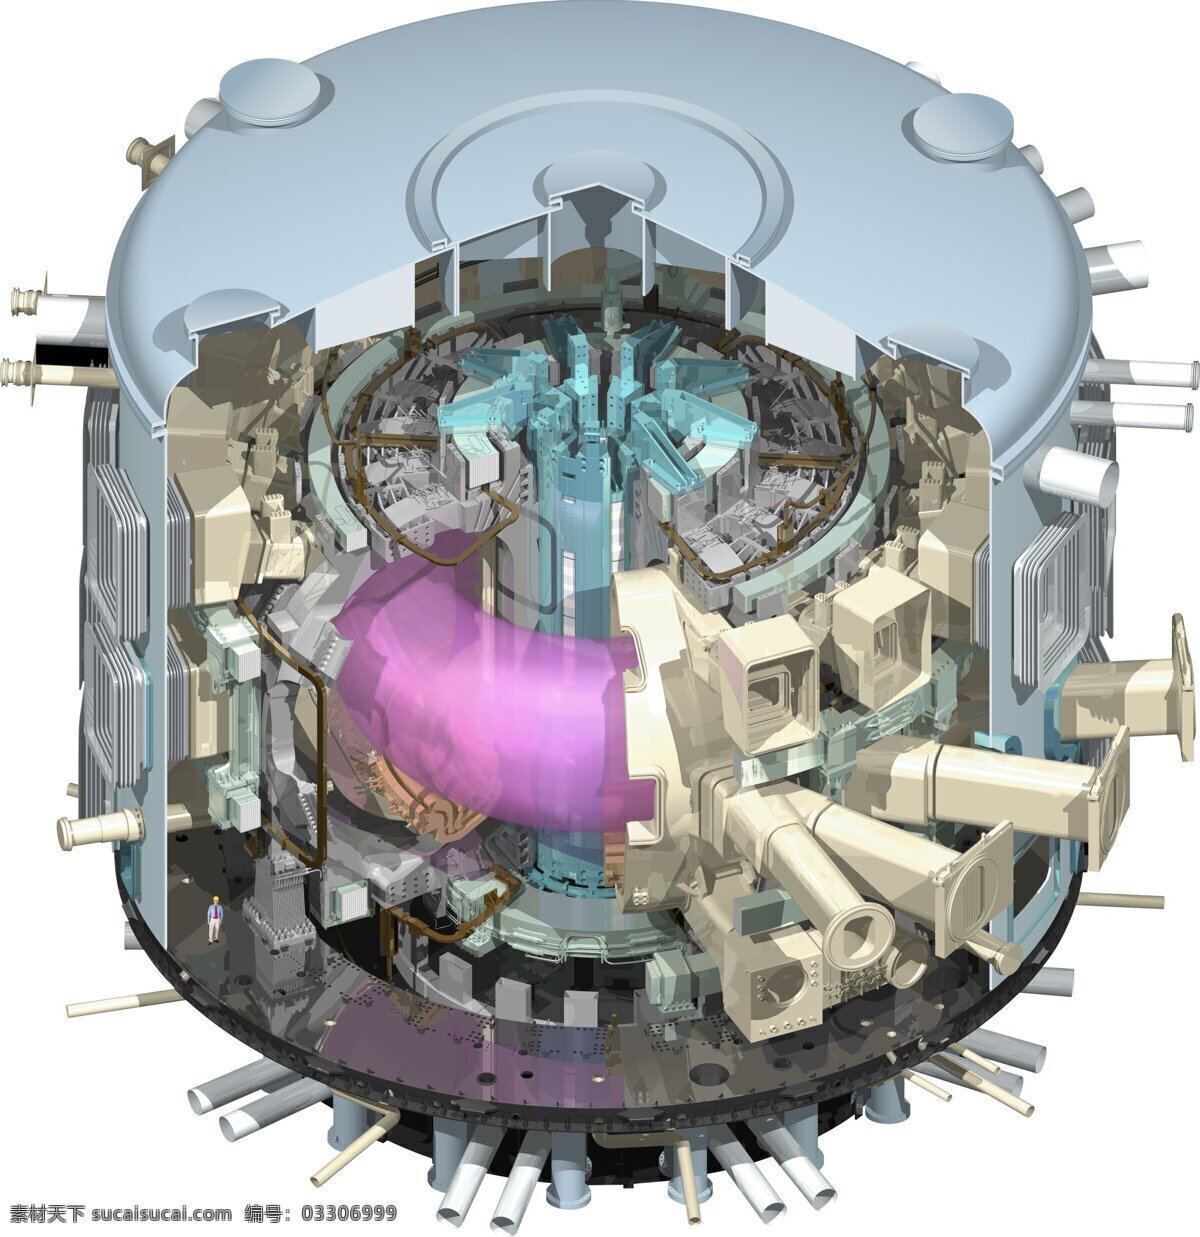 国际 热核 聚变 实验堆 超导托克马克 核聚变 法国卡达拉舍 中国 人造太阳 军事武器 现代科技